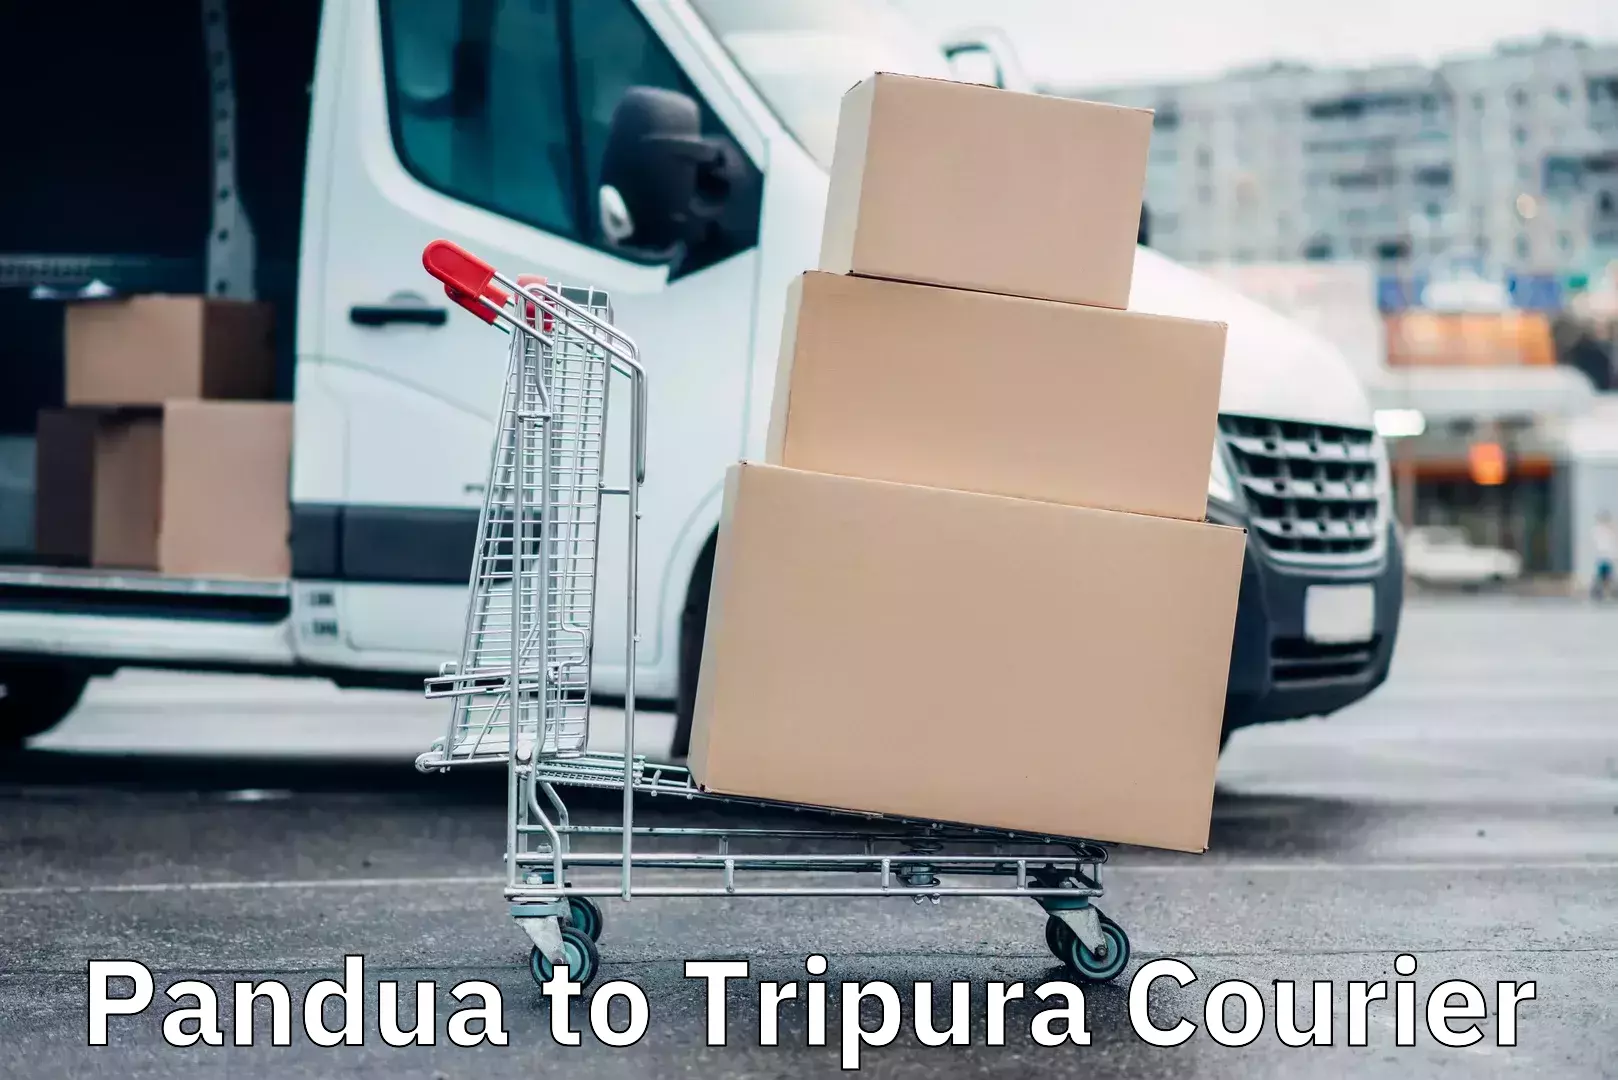 24/7 shipping services Pandua to Tripura